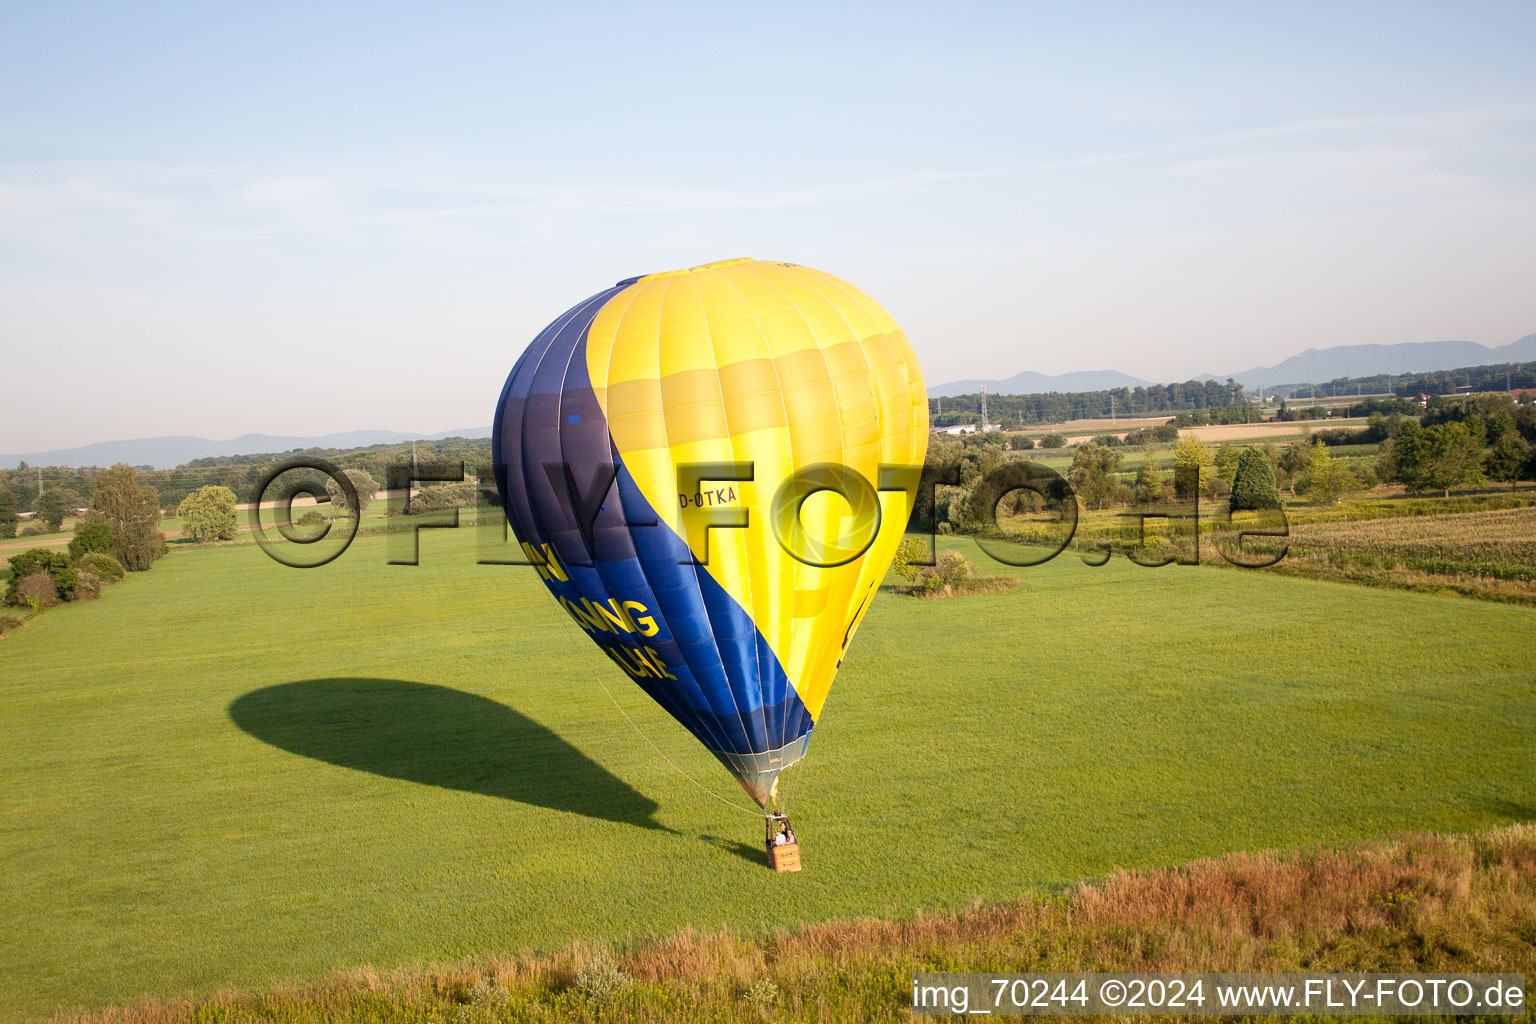 Ballon auf der Flucht in Erlenbach bei Kandel im Bundesland Rheinland-Pfalz, Deutschland von oben